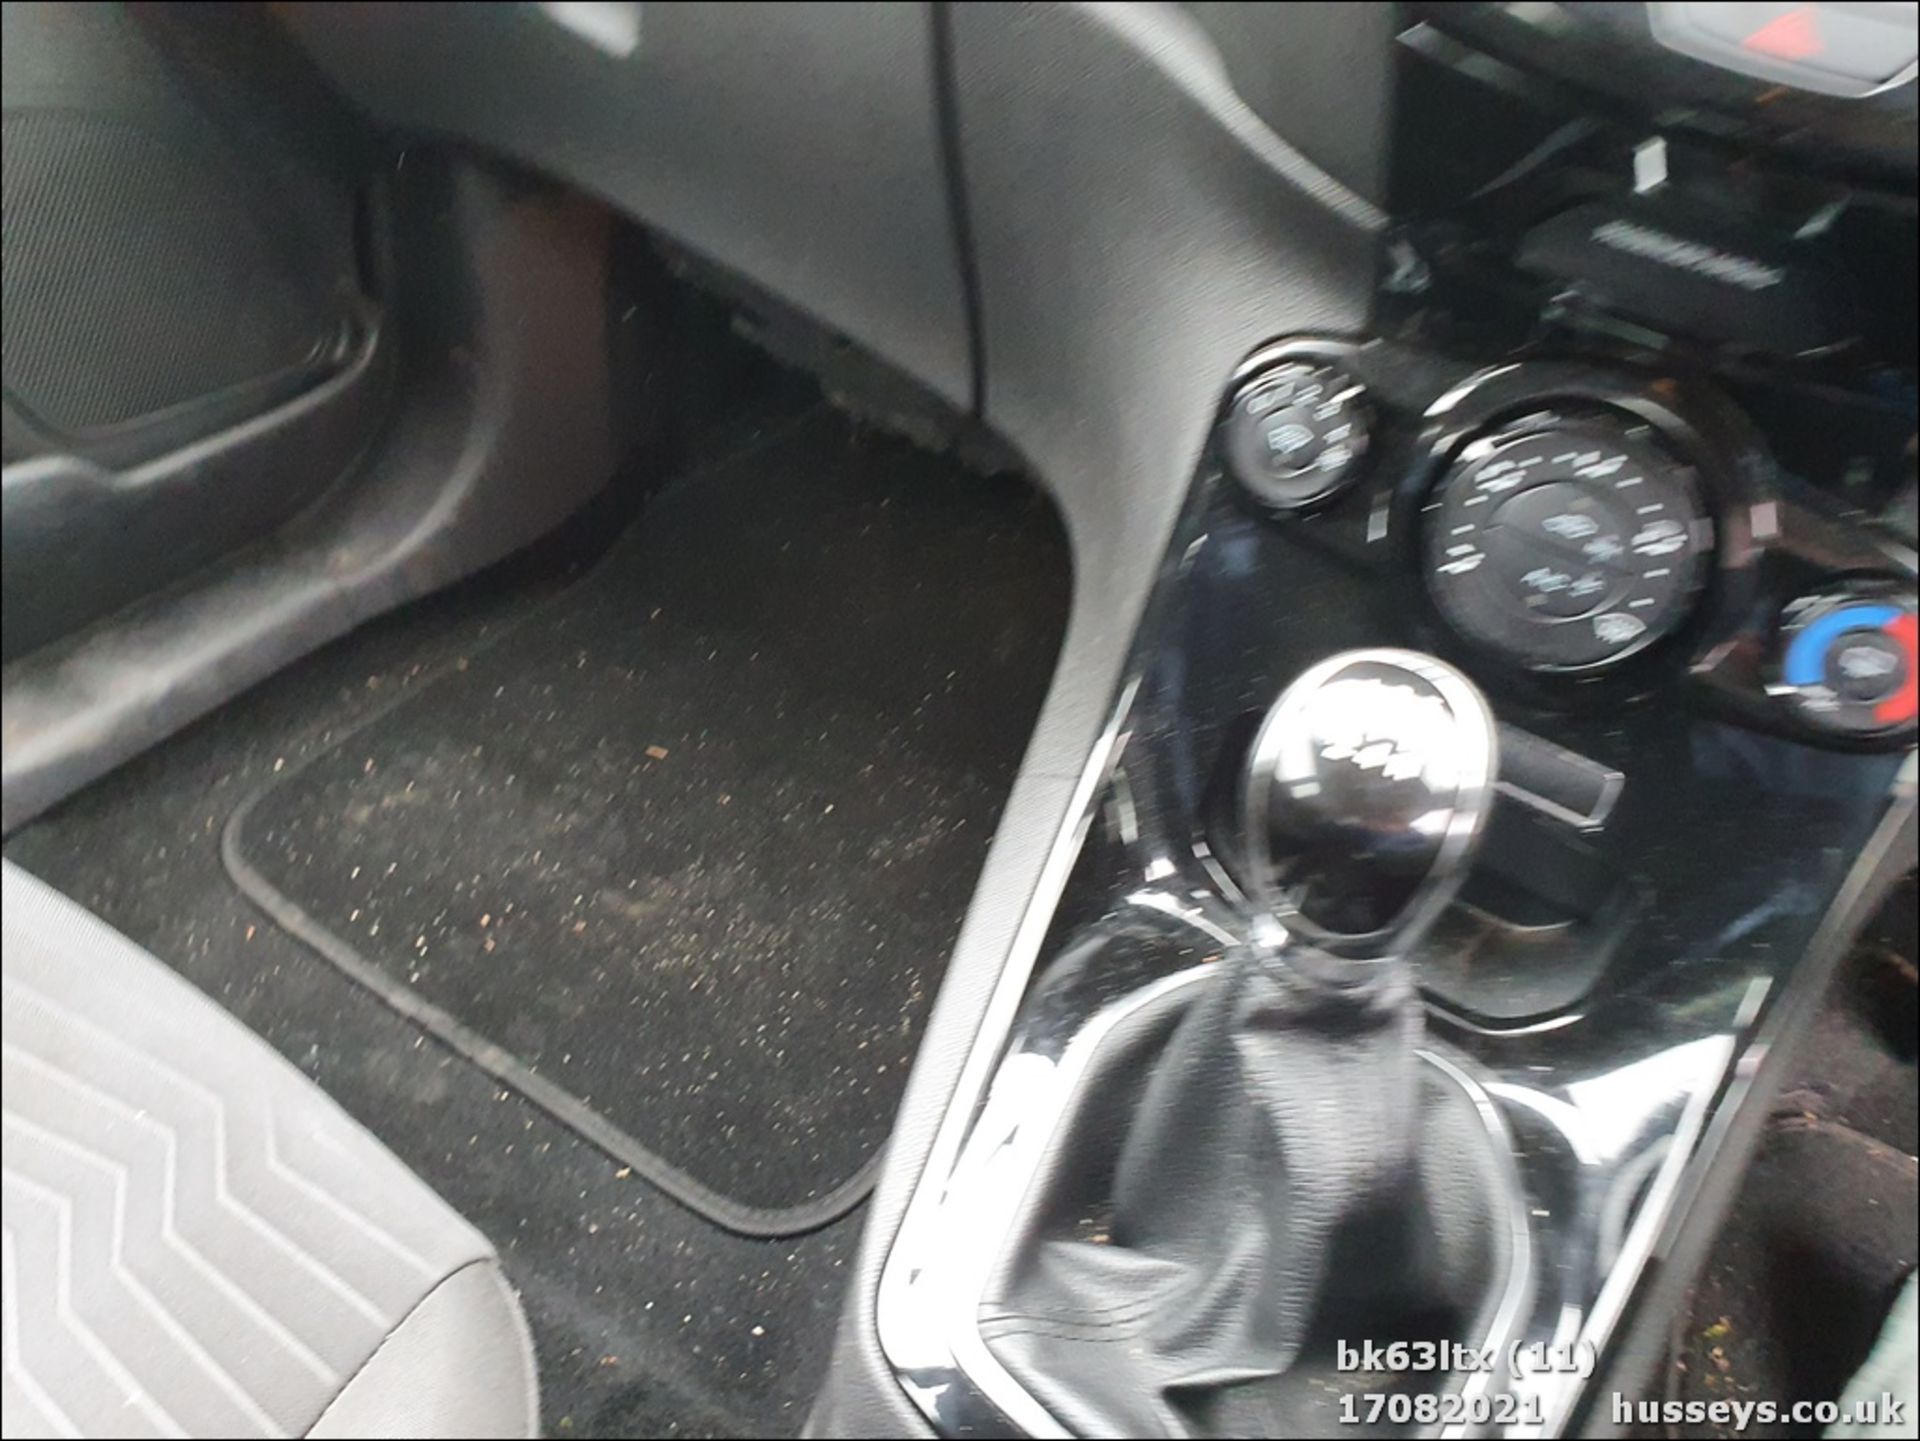 13/63 FORD FIESTA ZETEC - 998cc 5dr Hatchback (Black, 53k) - Image 12 of 16